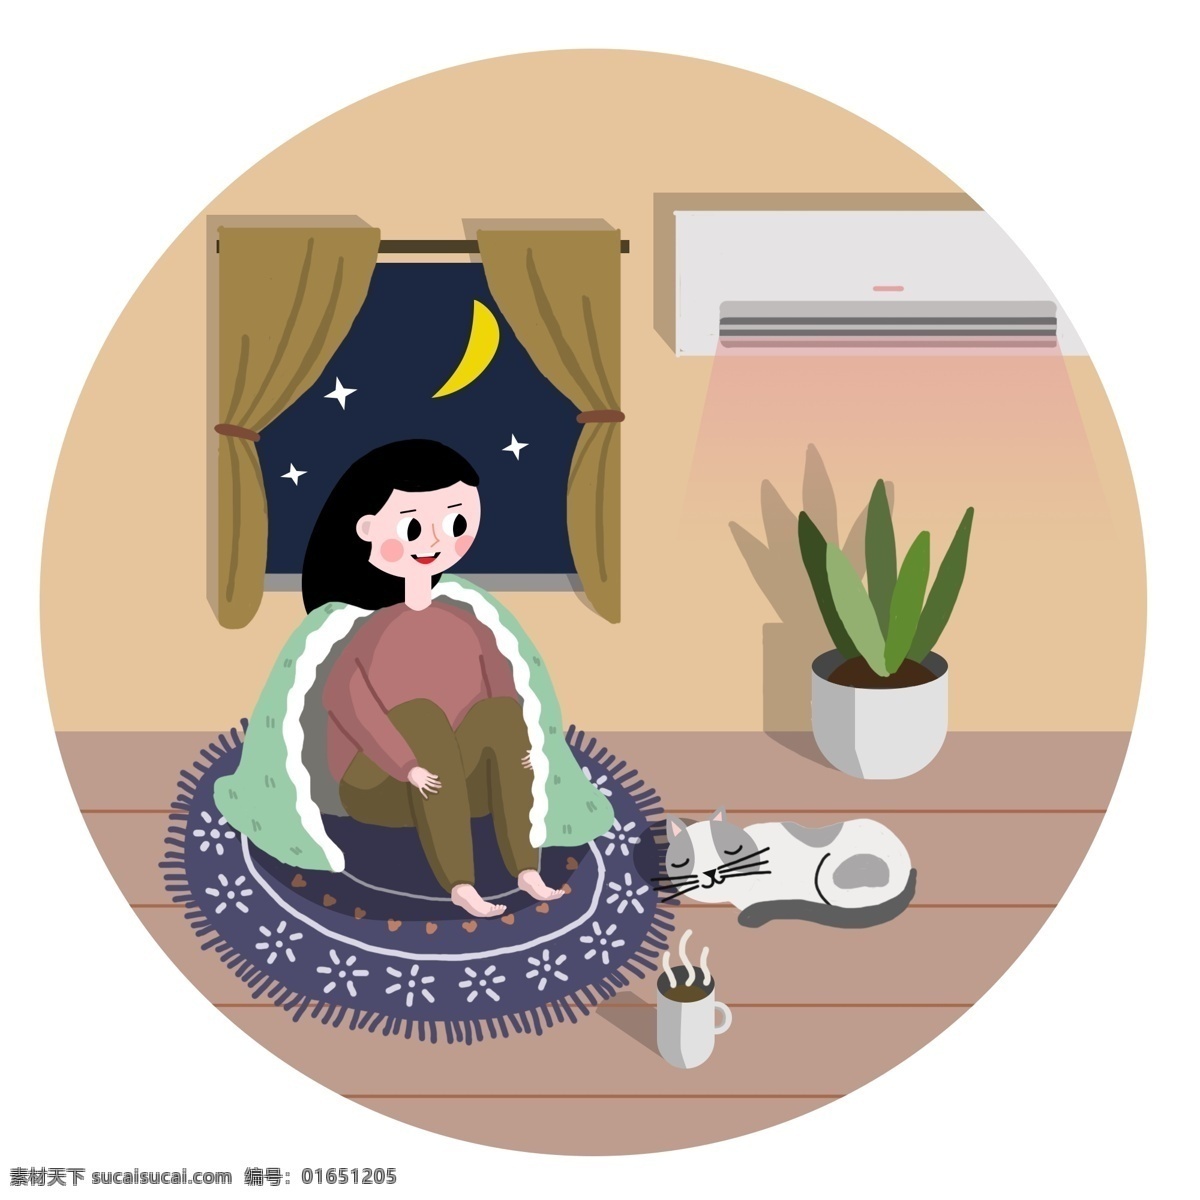 冬天 宅 在家 取暖 窗户 窗帘 月亮 星星 家里 女孩 羊毛毯 空调 热咖啡 水杯 睡觉的猫 绿色植物 花盆